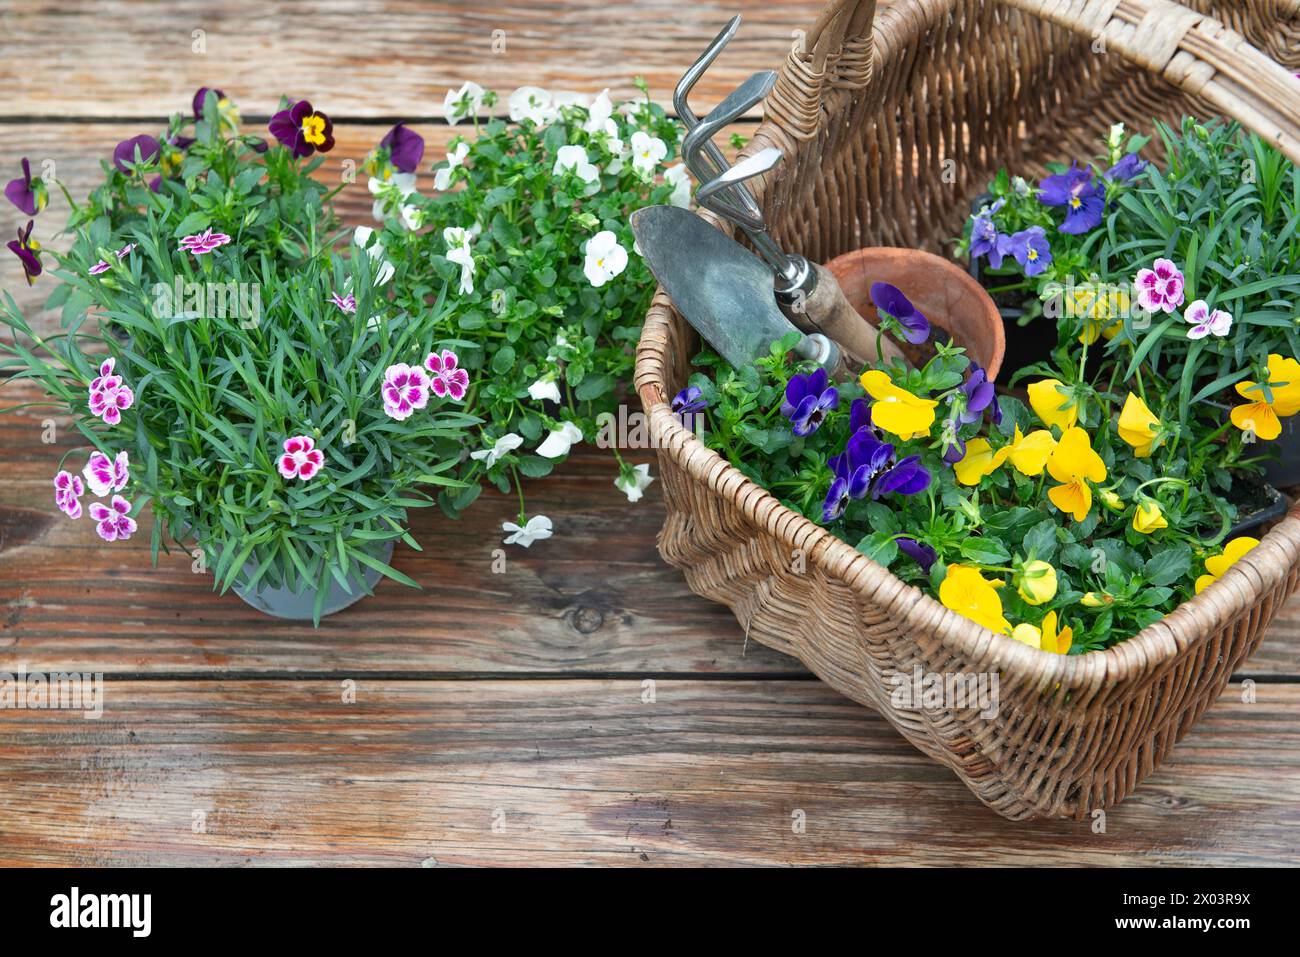 Blühende Blumen in einem Korb und Gartenwerkzeuge auf Holztisch, die nach dem Regen nass sind Stockfoto